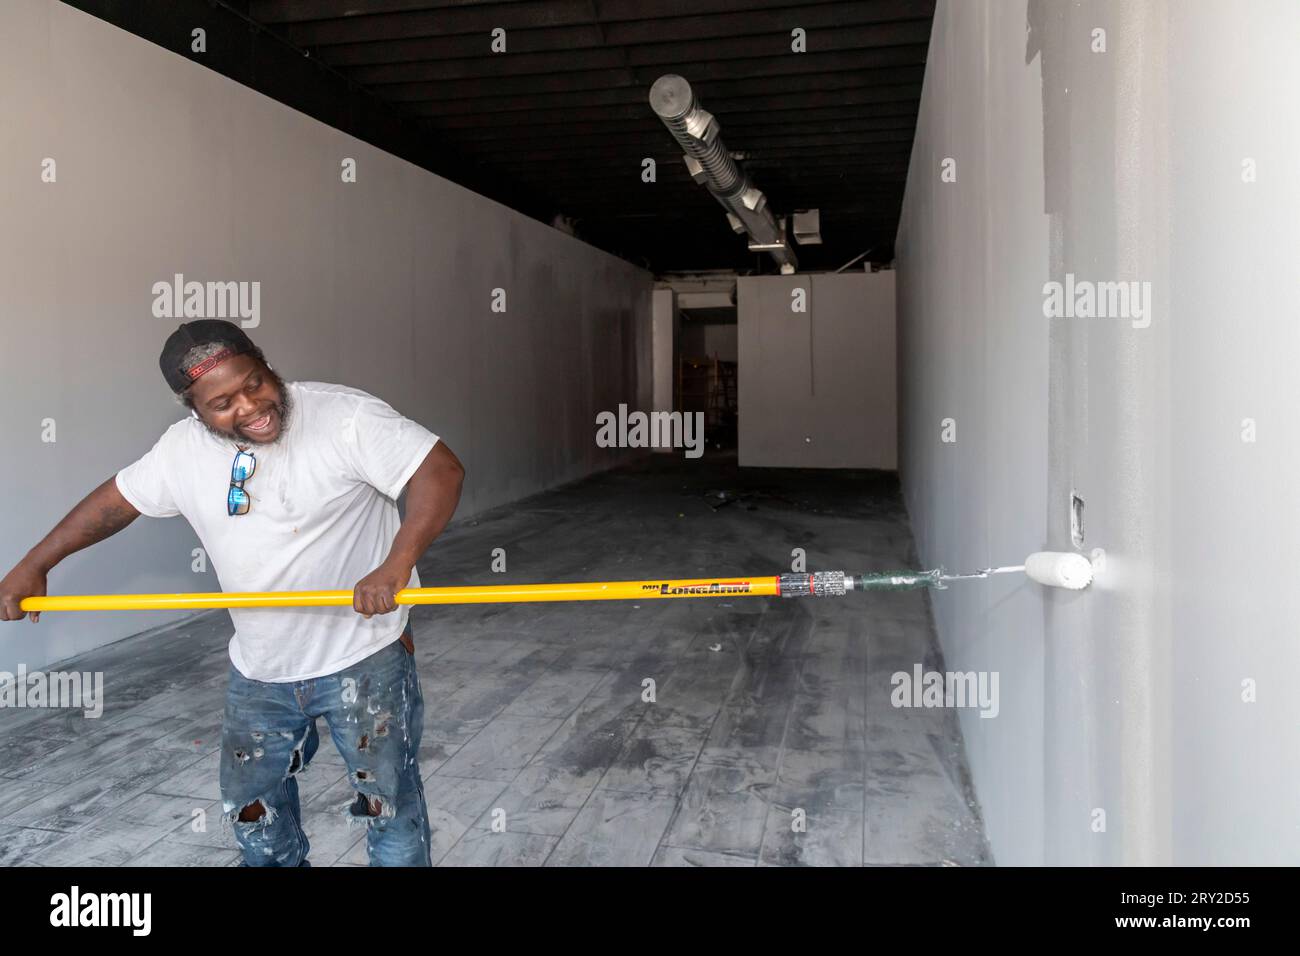 Detroit, Michigan - Un travailleur repeint un espace de vente après que le magasin a été gravement endommagé par un incendie déclenché par une bougie allumée. Banque D'Images